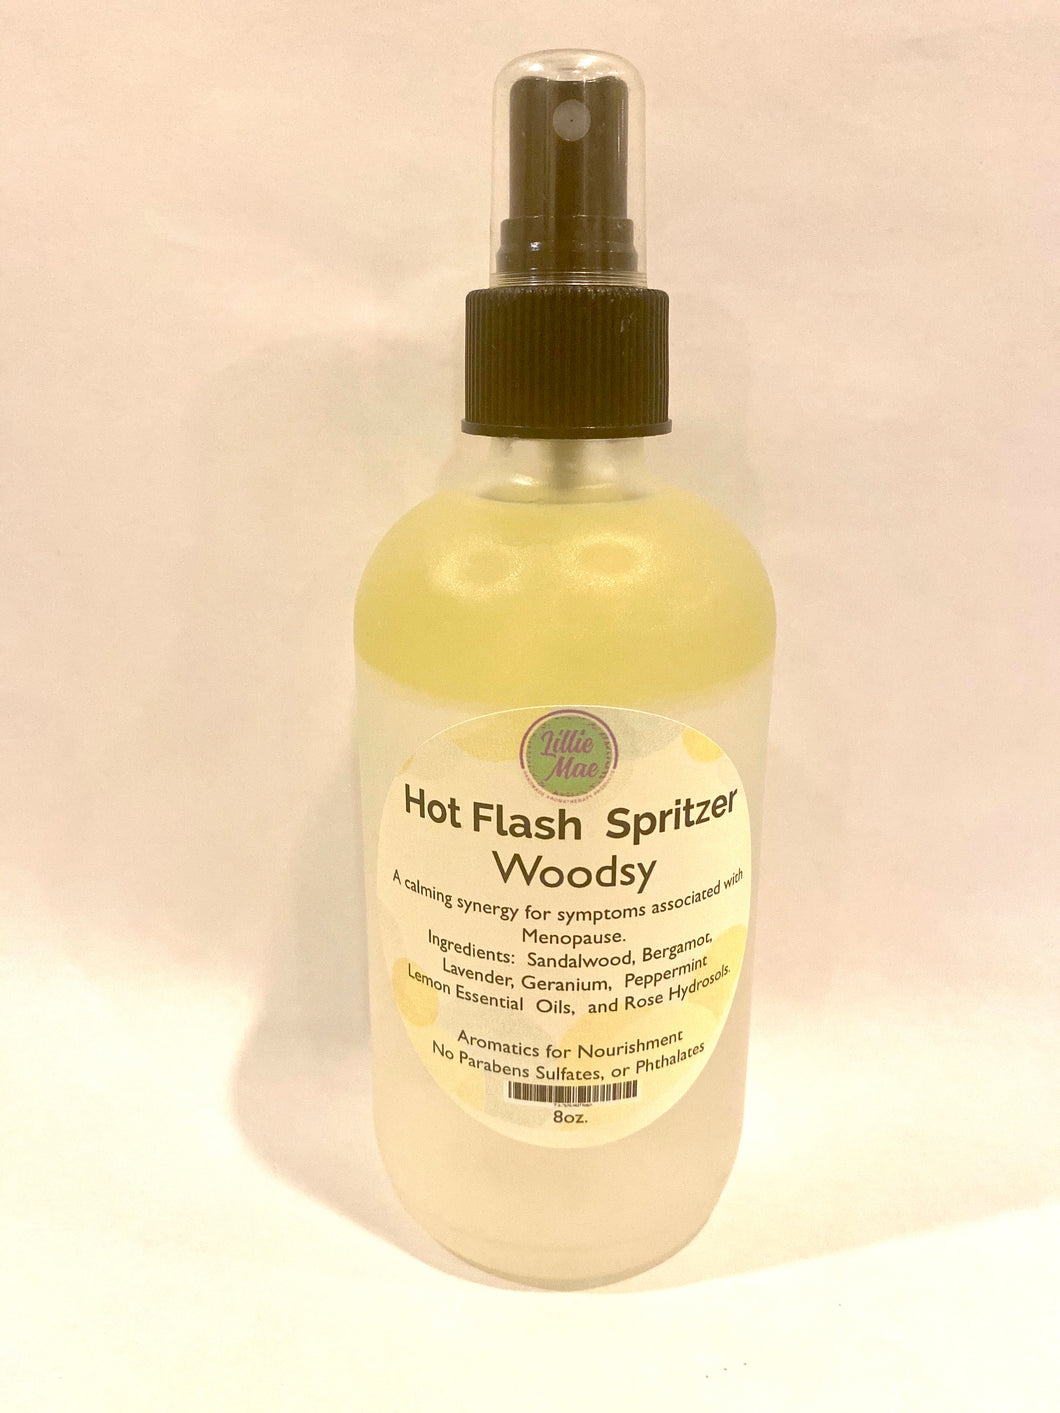 Hot-Flash Spritzer (Woodsy)